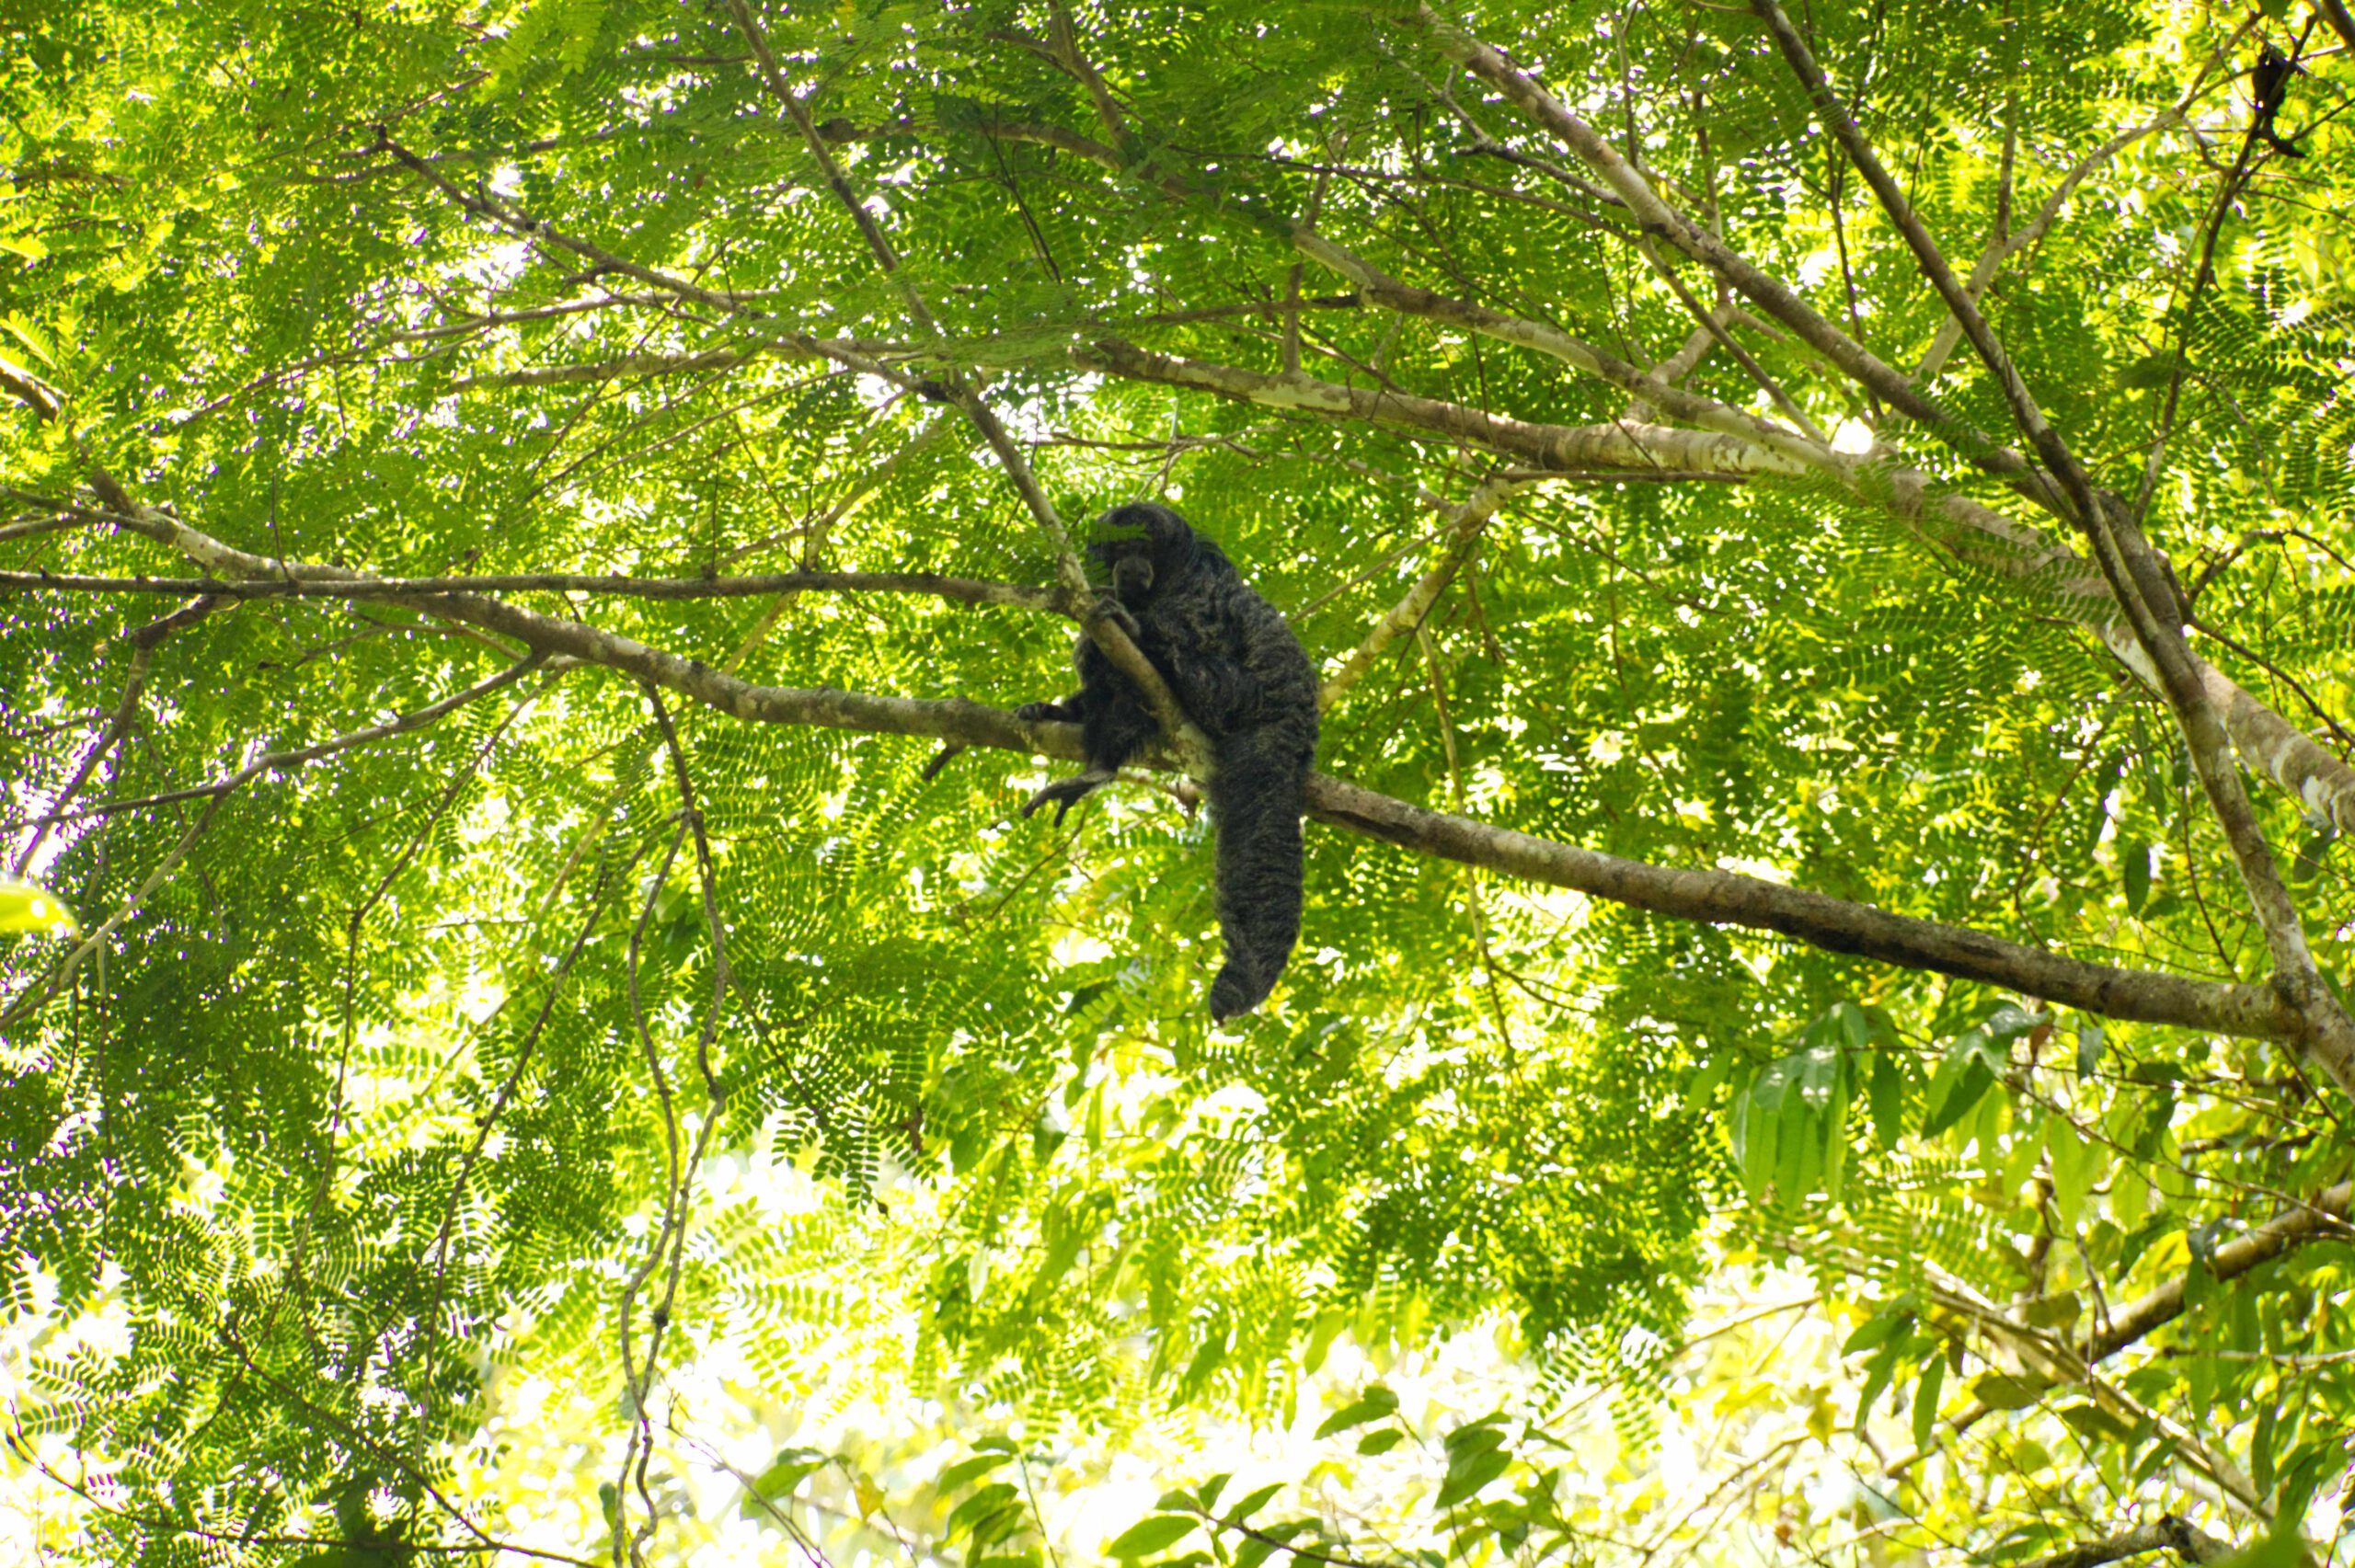 Lifestyle Ecuador: Brüllaffe im Baum Cuyabeno Ecuador